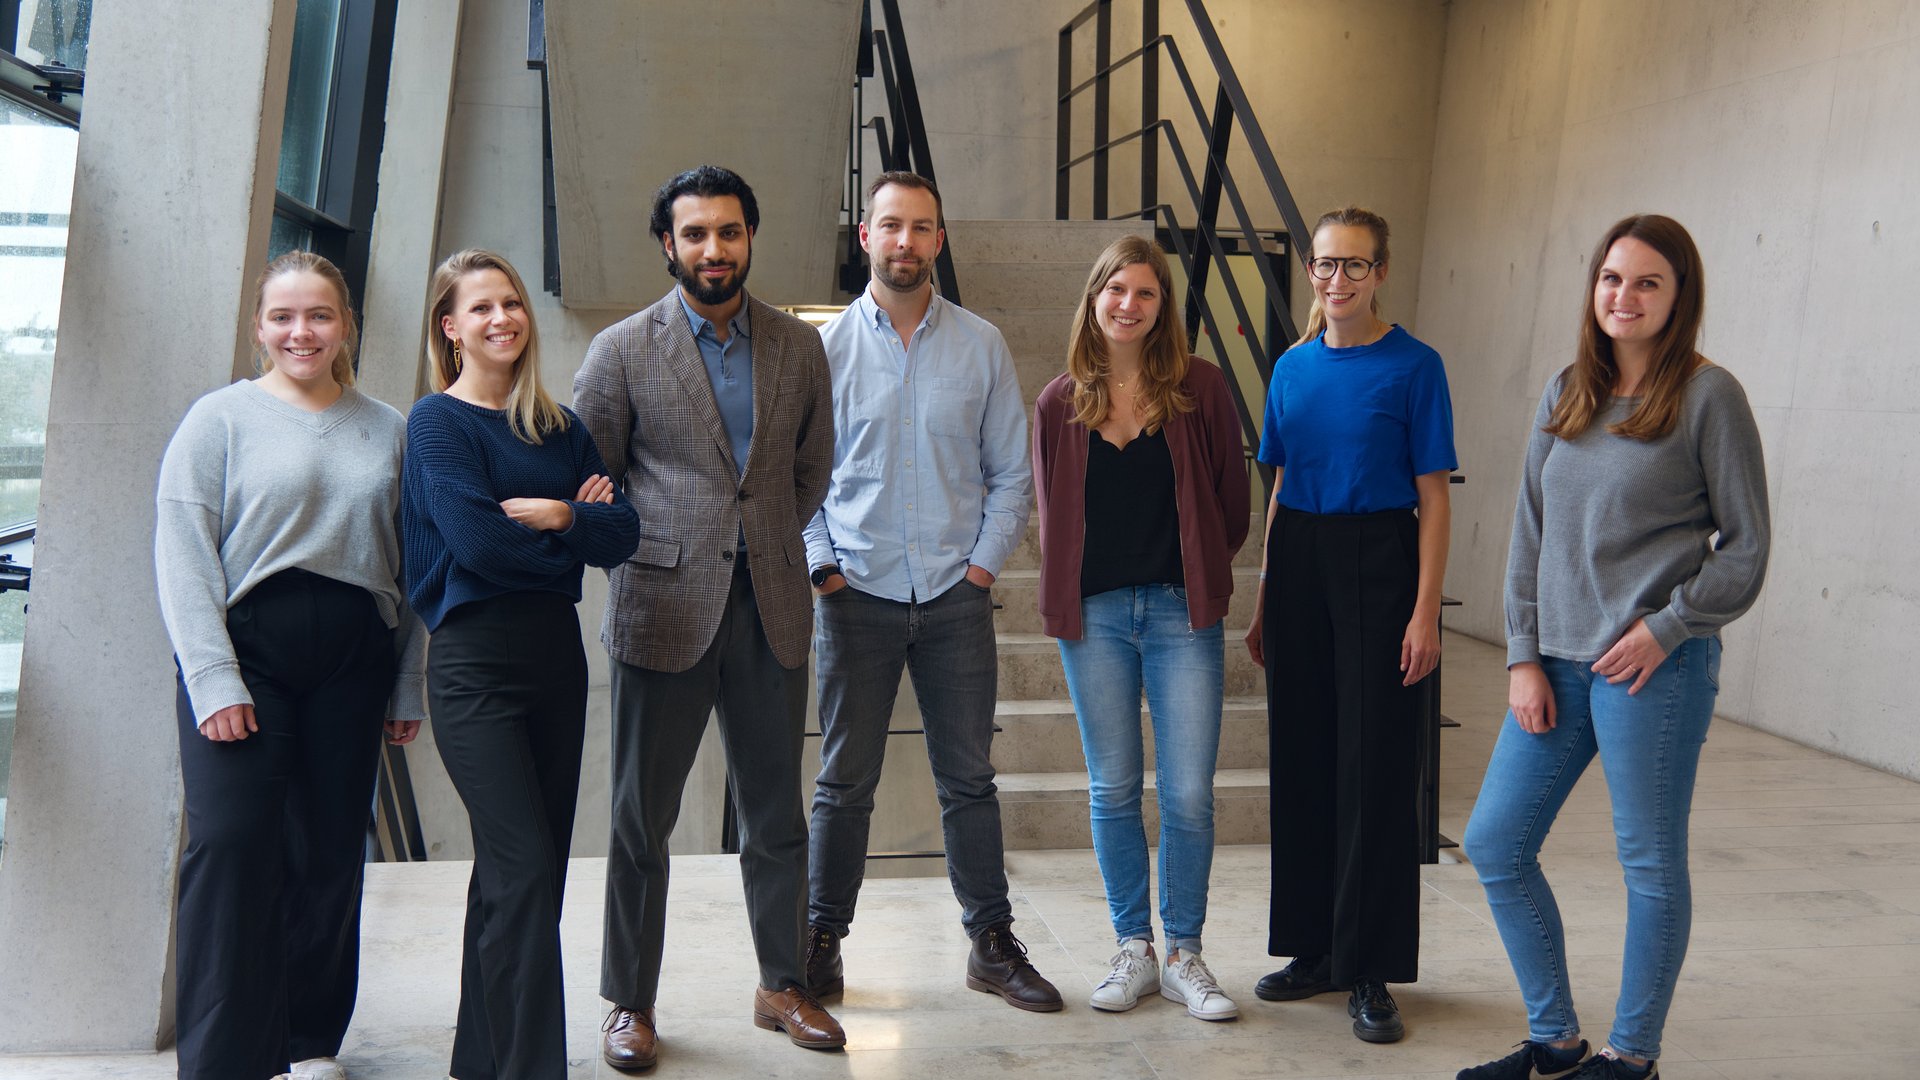 Gruppenbild der der Leibniz Research Group Lassa-Pathophysiology: 7 Personen stehen in einem Betontreppenhaus und schauen in die Kamera.